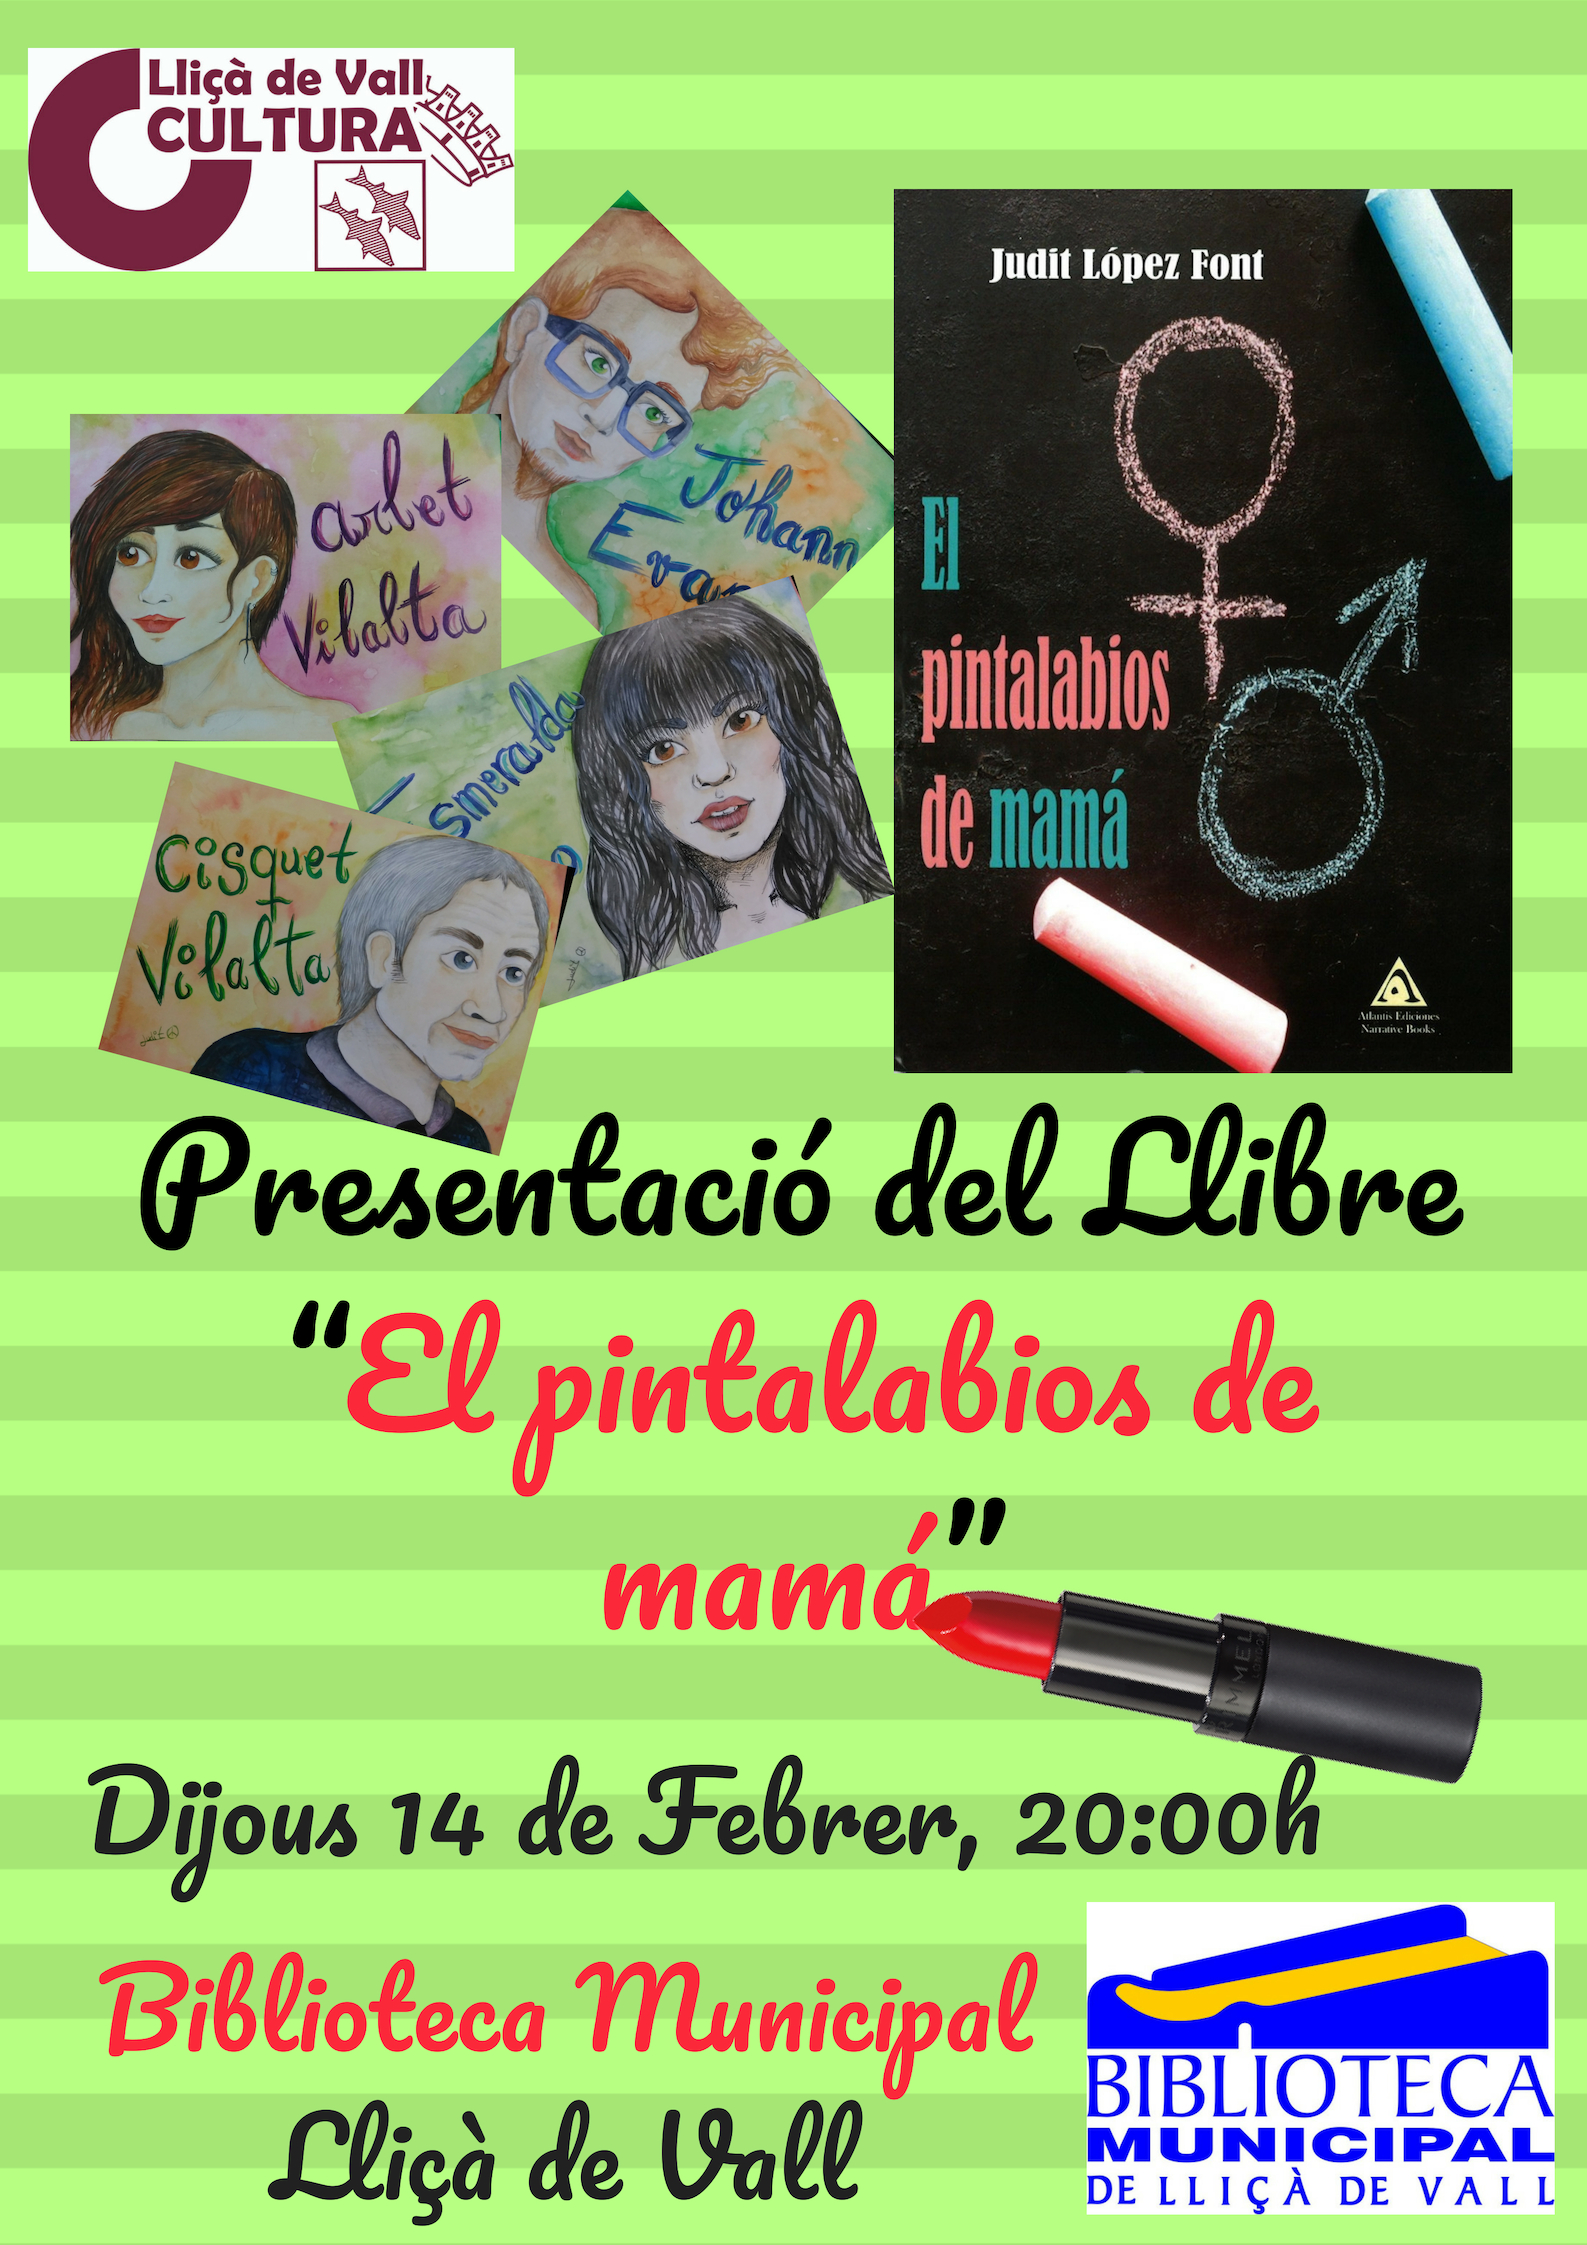 Annexe Presentacioě del Llibre “El pintalabios de mamaě”.jpg